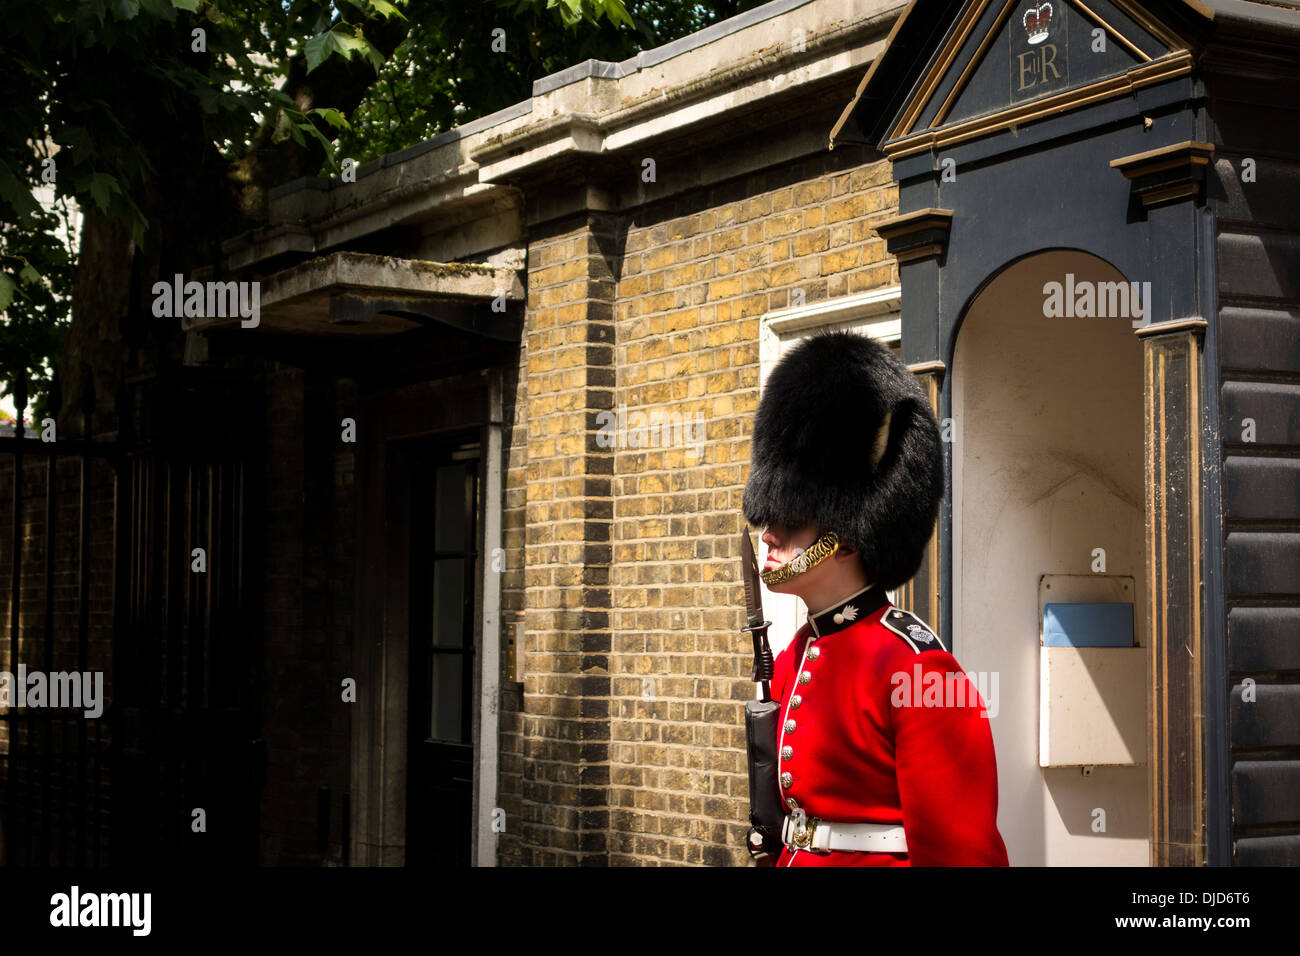 Guardia en St James's Palace, Londres, Reino Unido. Foto de stock